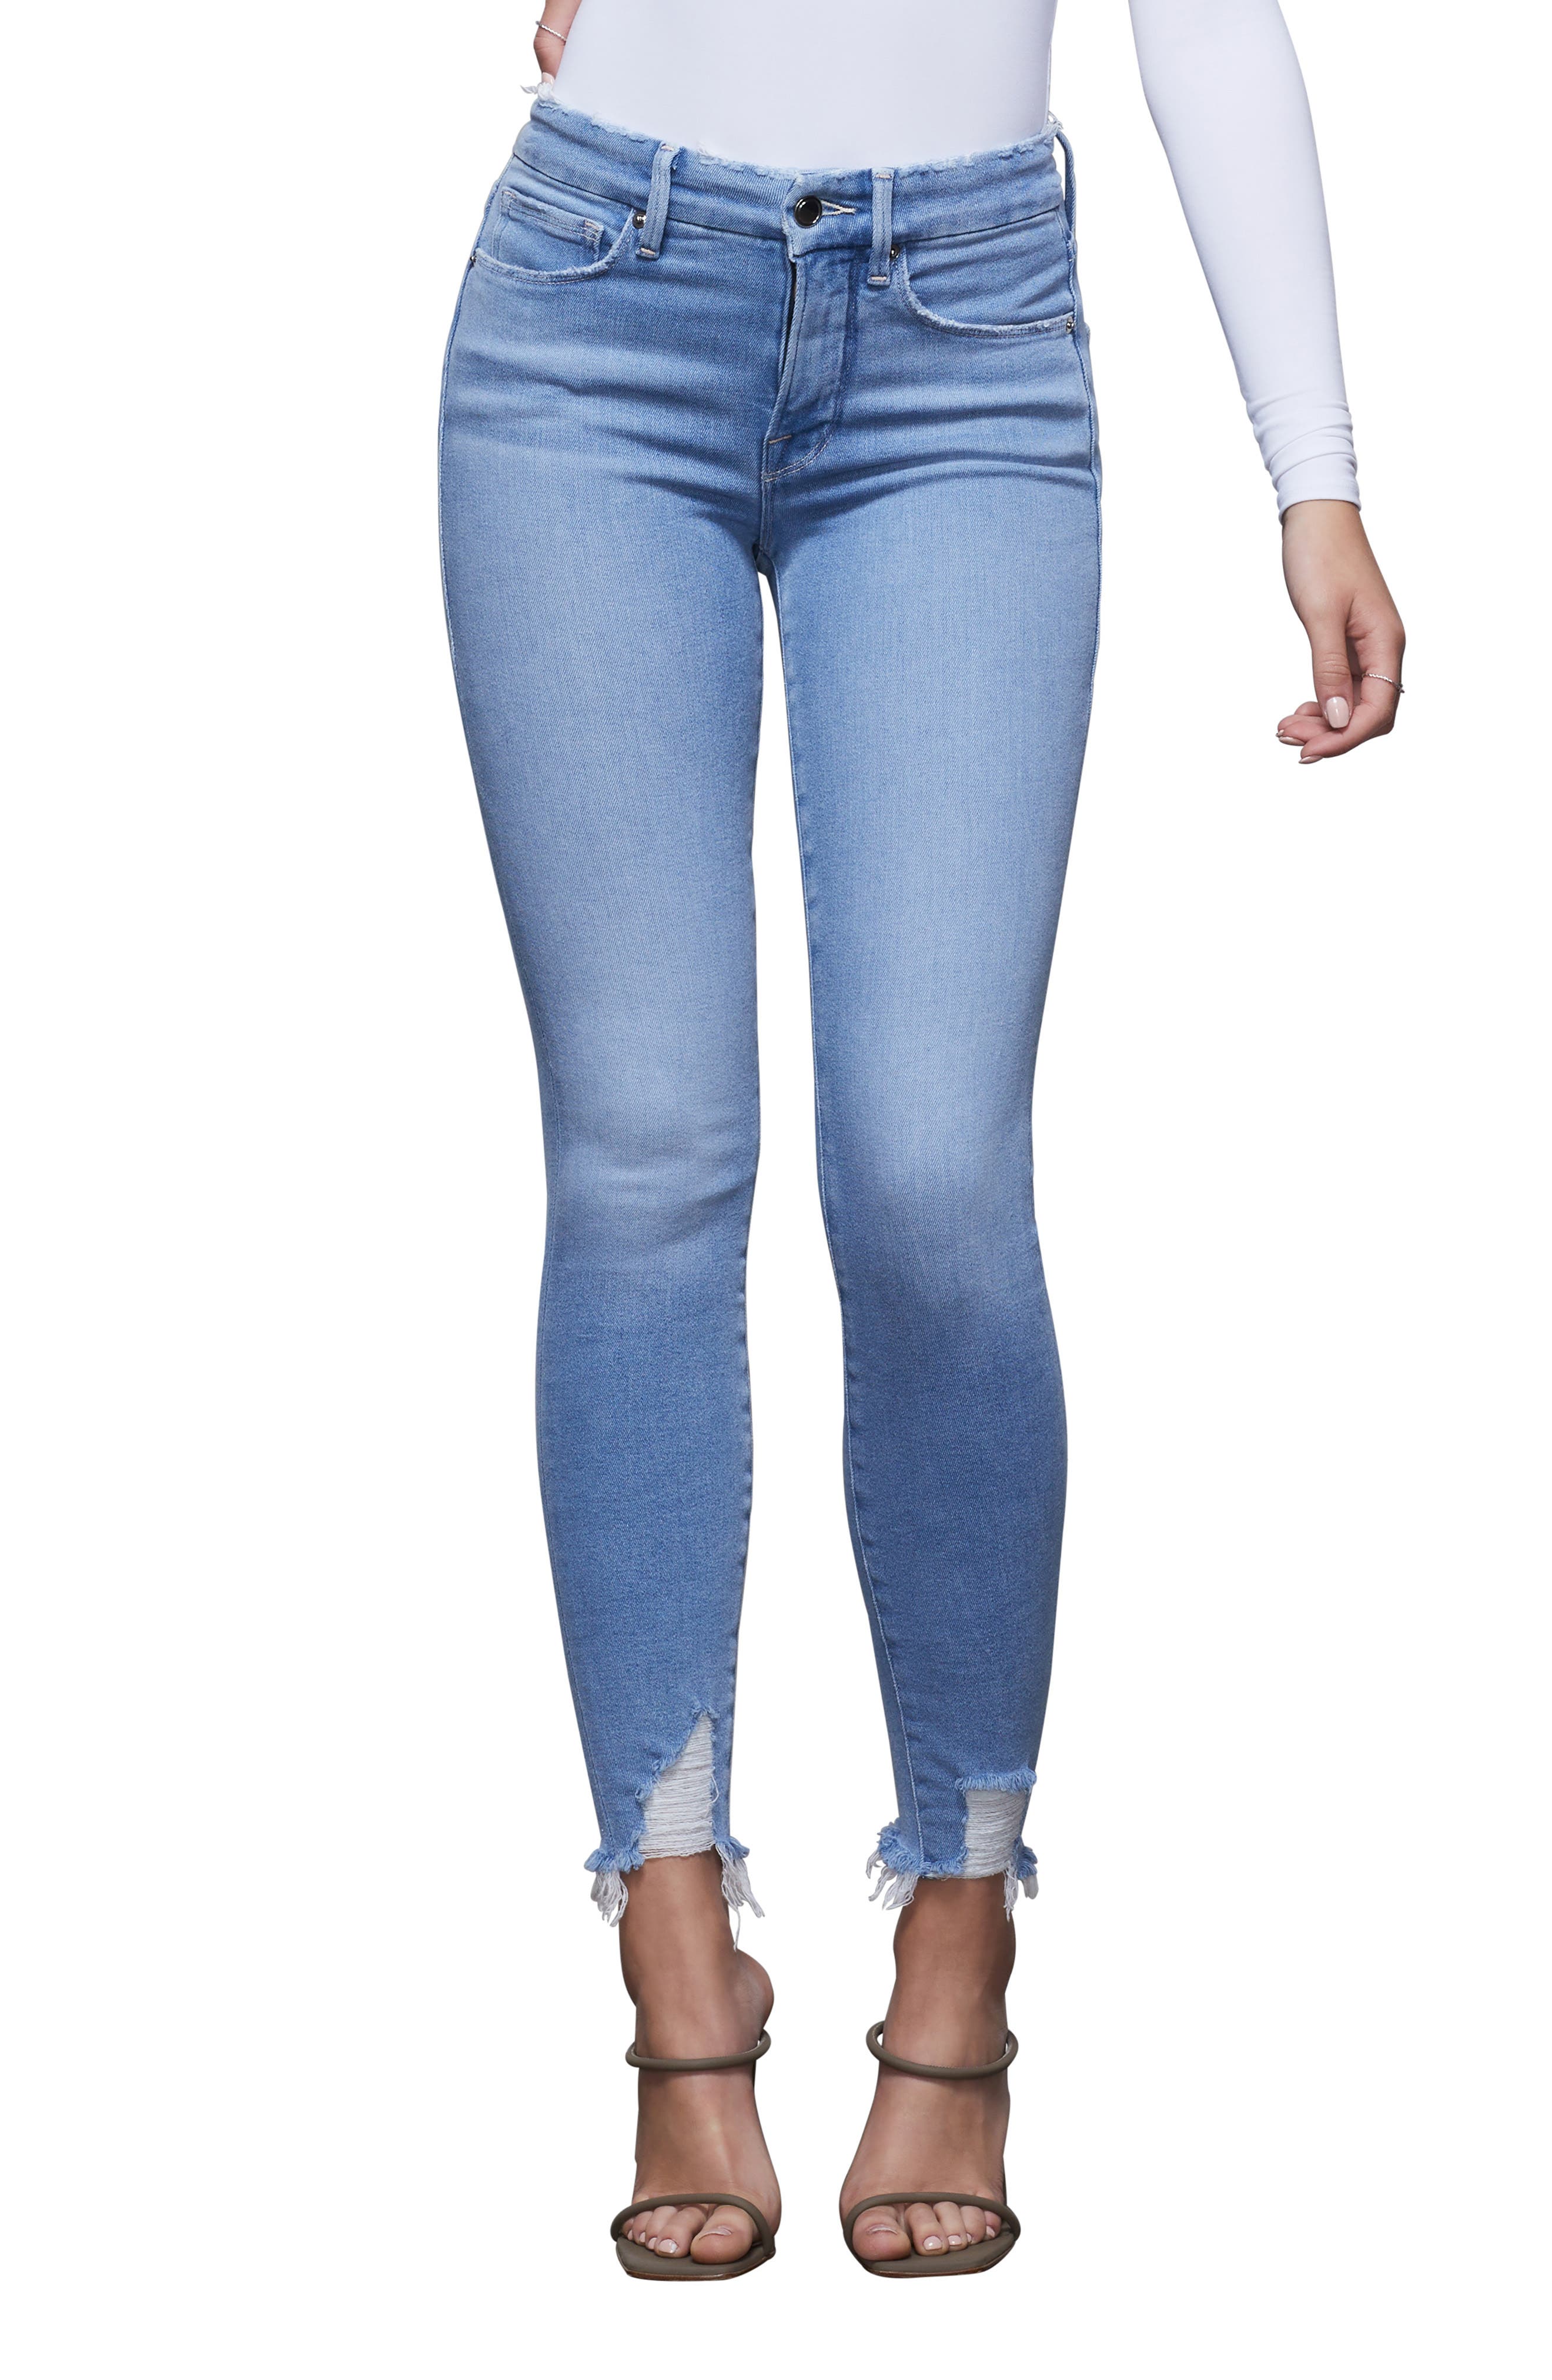 women's size 18 skinny jeans